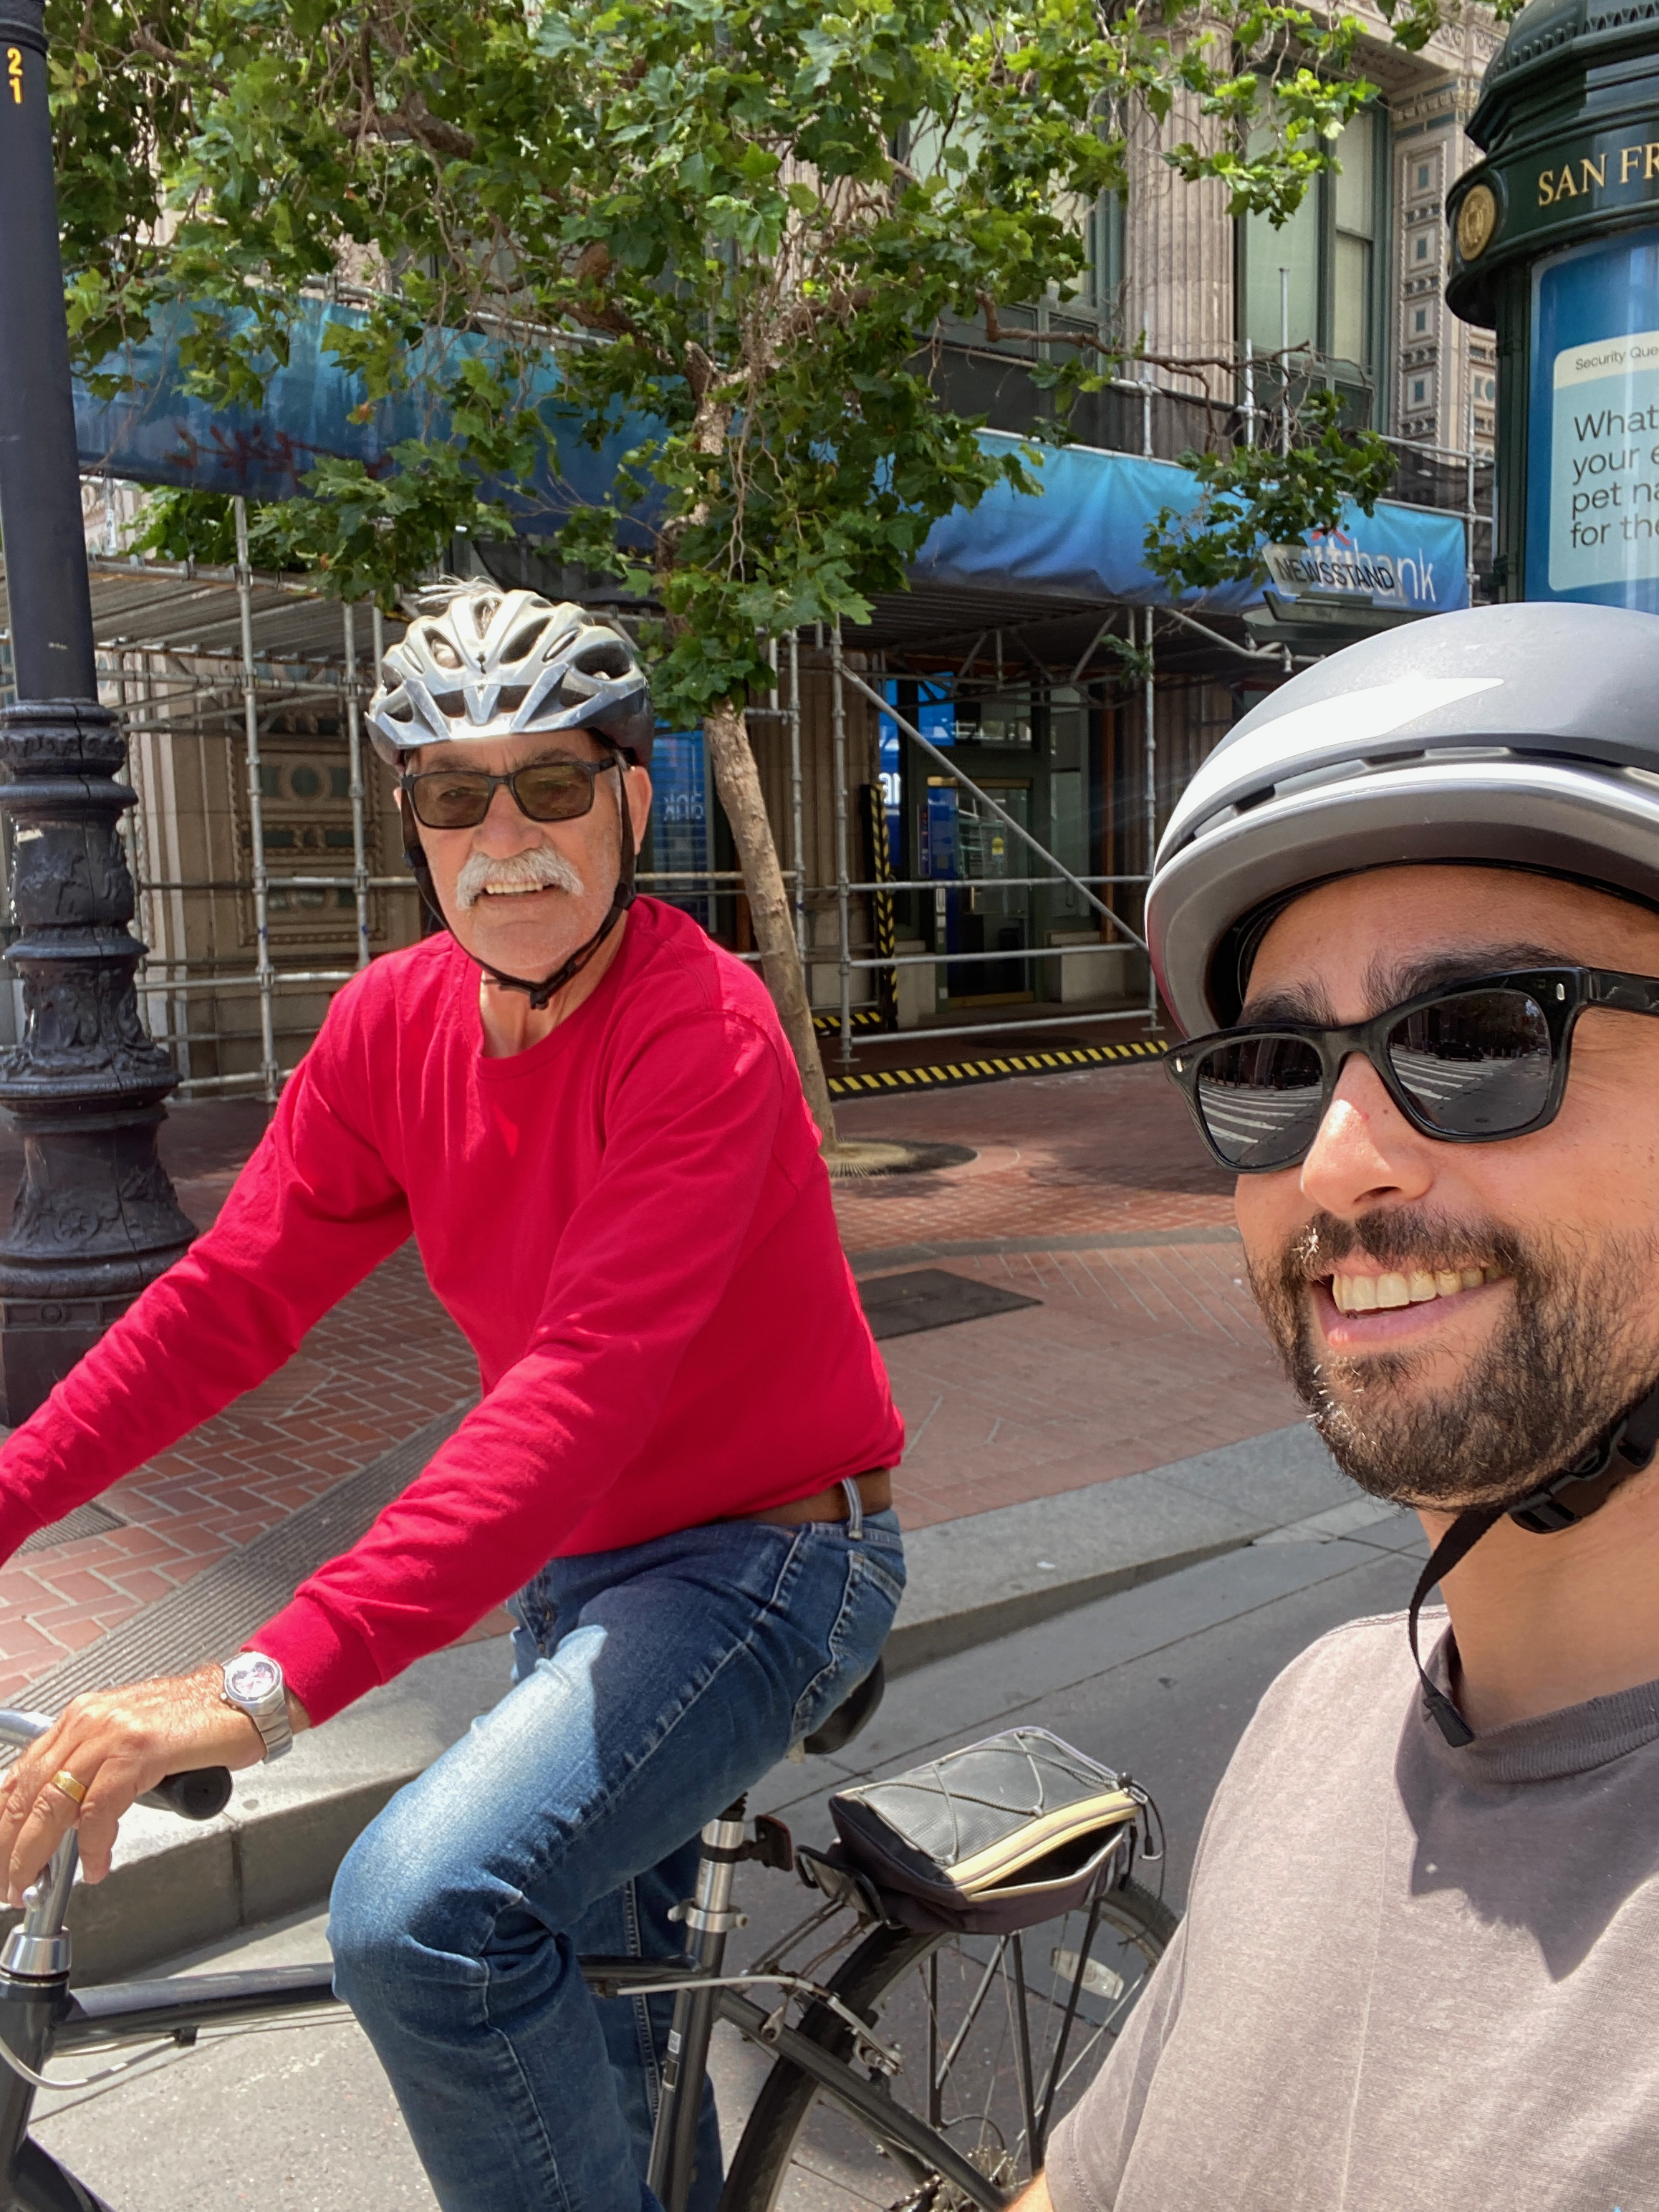 Mike & Max biking on Market Street in San Francisco, wearing helmets